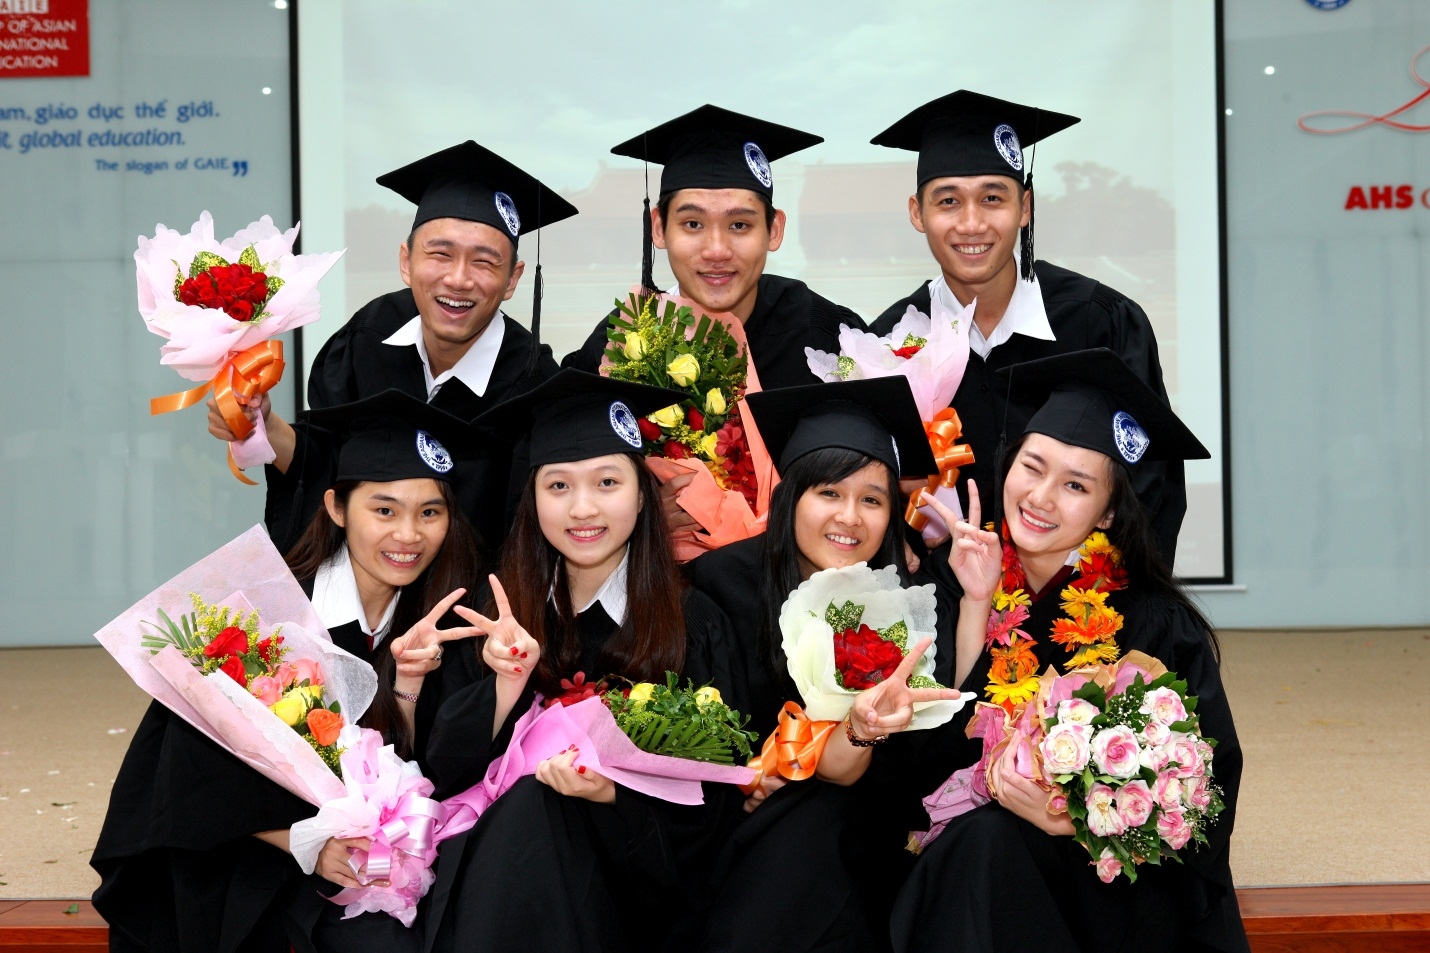 Trường Quốc tế Á Châu long trọng tổ chức Lễ tốt nghiệp vinh danh 192 tân tú tài năm học 2013-2014...